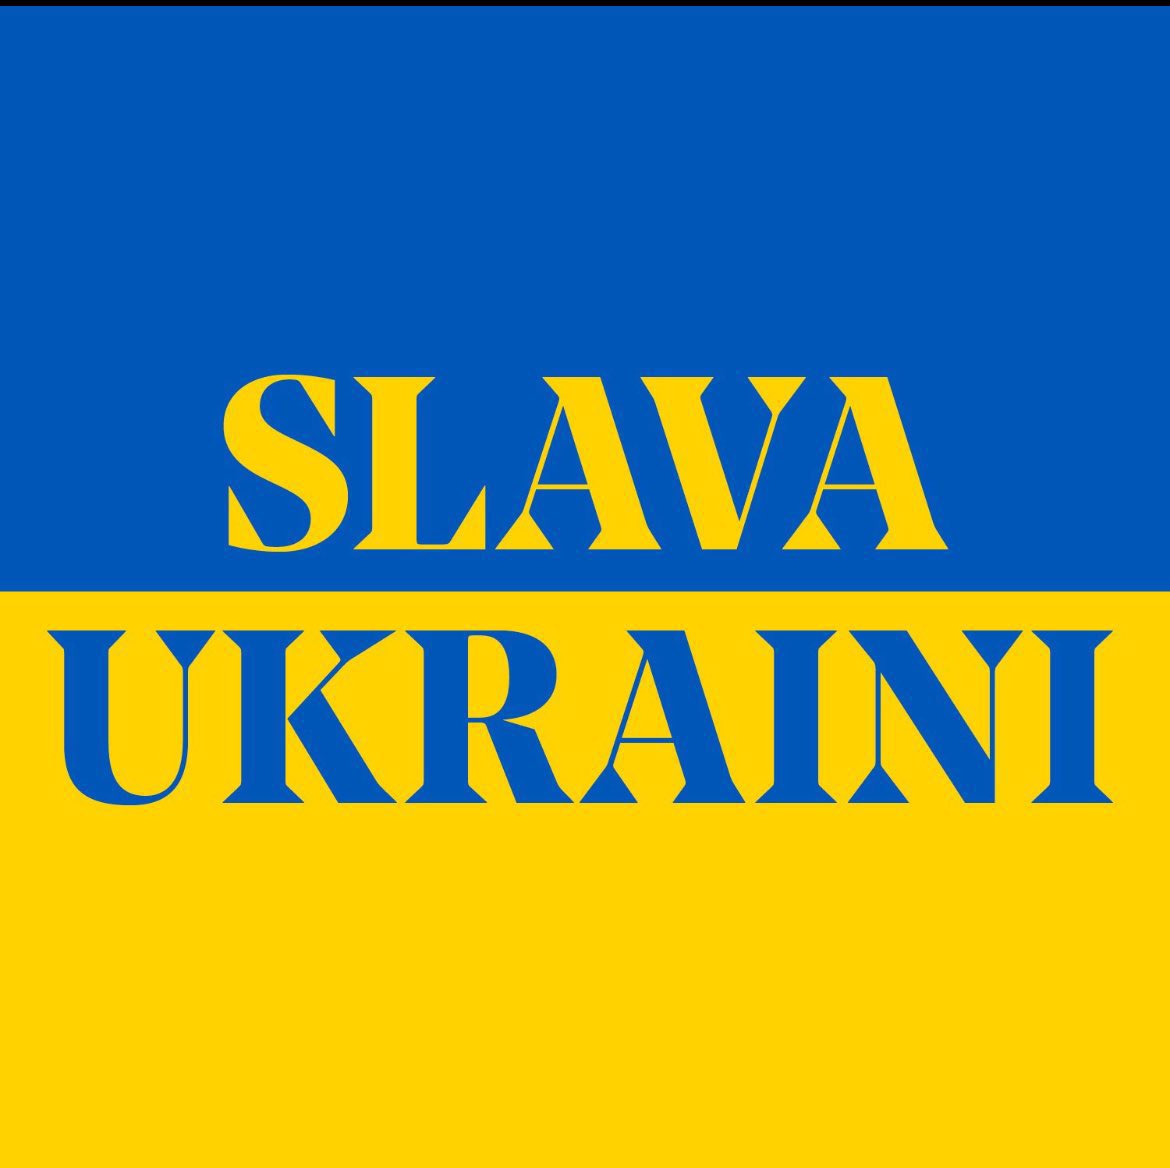 Difendere l’Ucraina significa difendere l’Europa, la democrazia e la libertà. Dobbiamo ricordarlo tutti, soprattutto a due anni dalla brutale aggressione russa. #SlavaUkraini